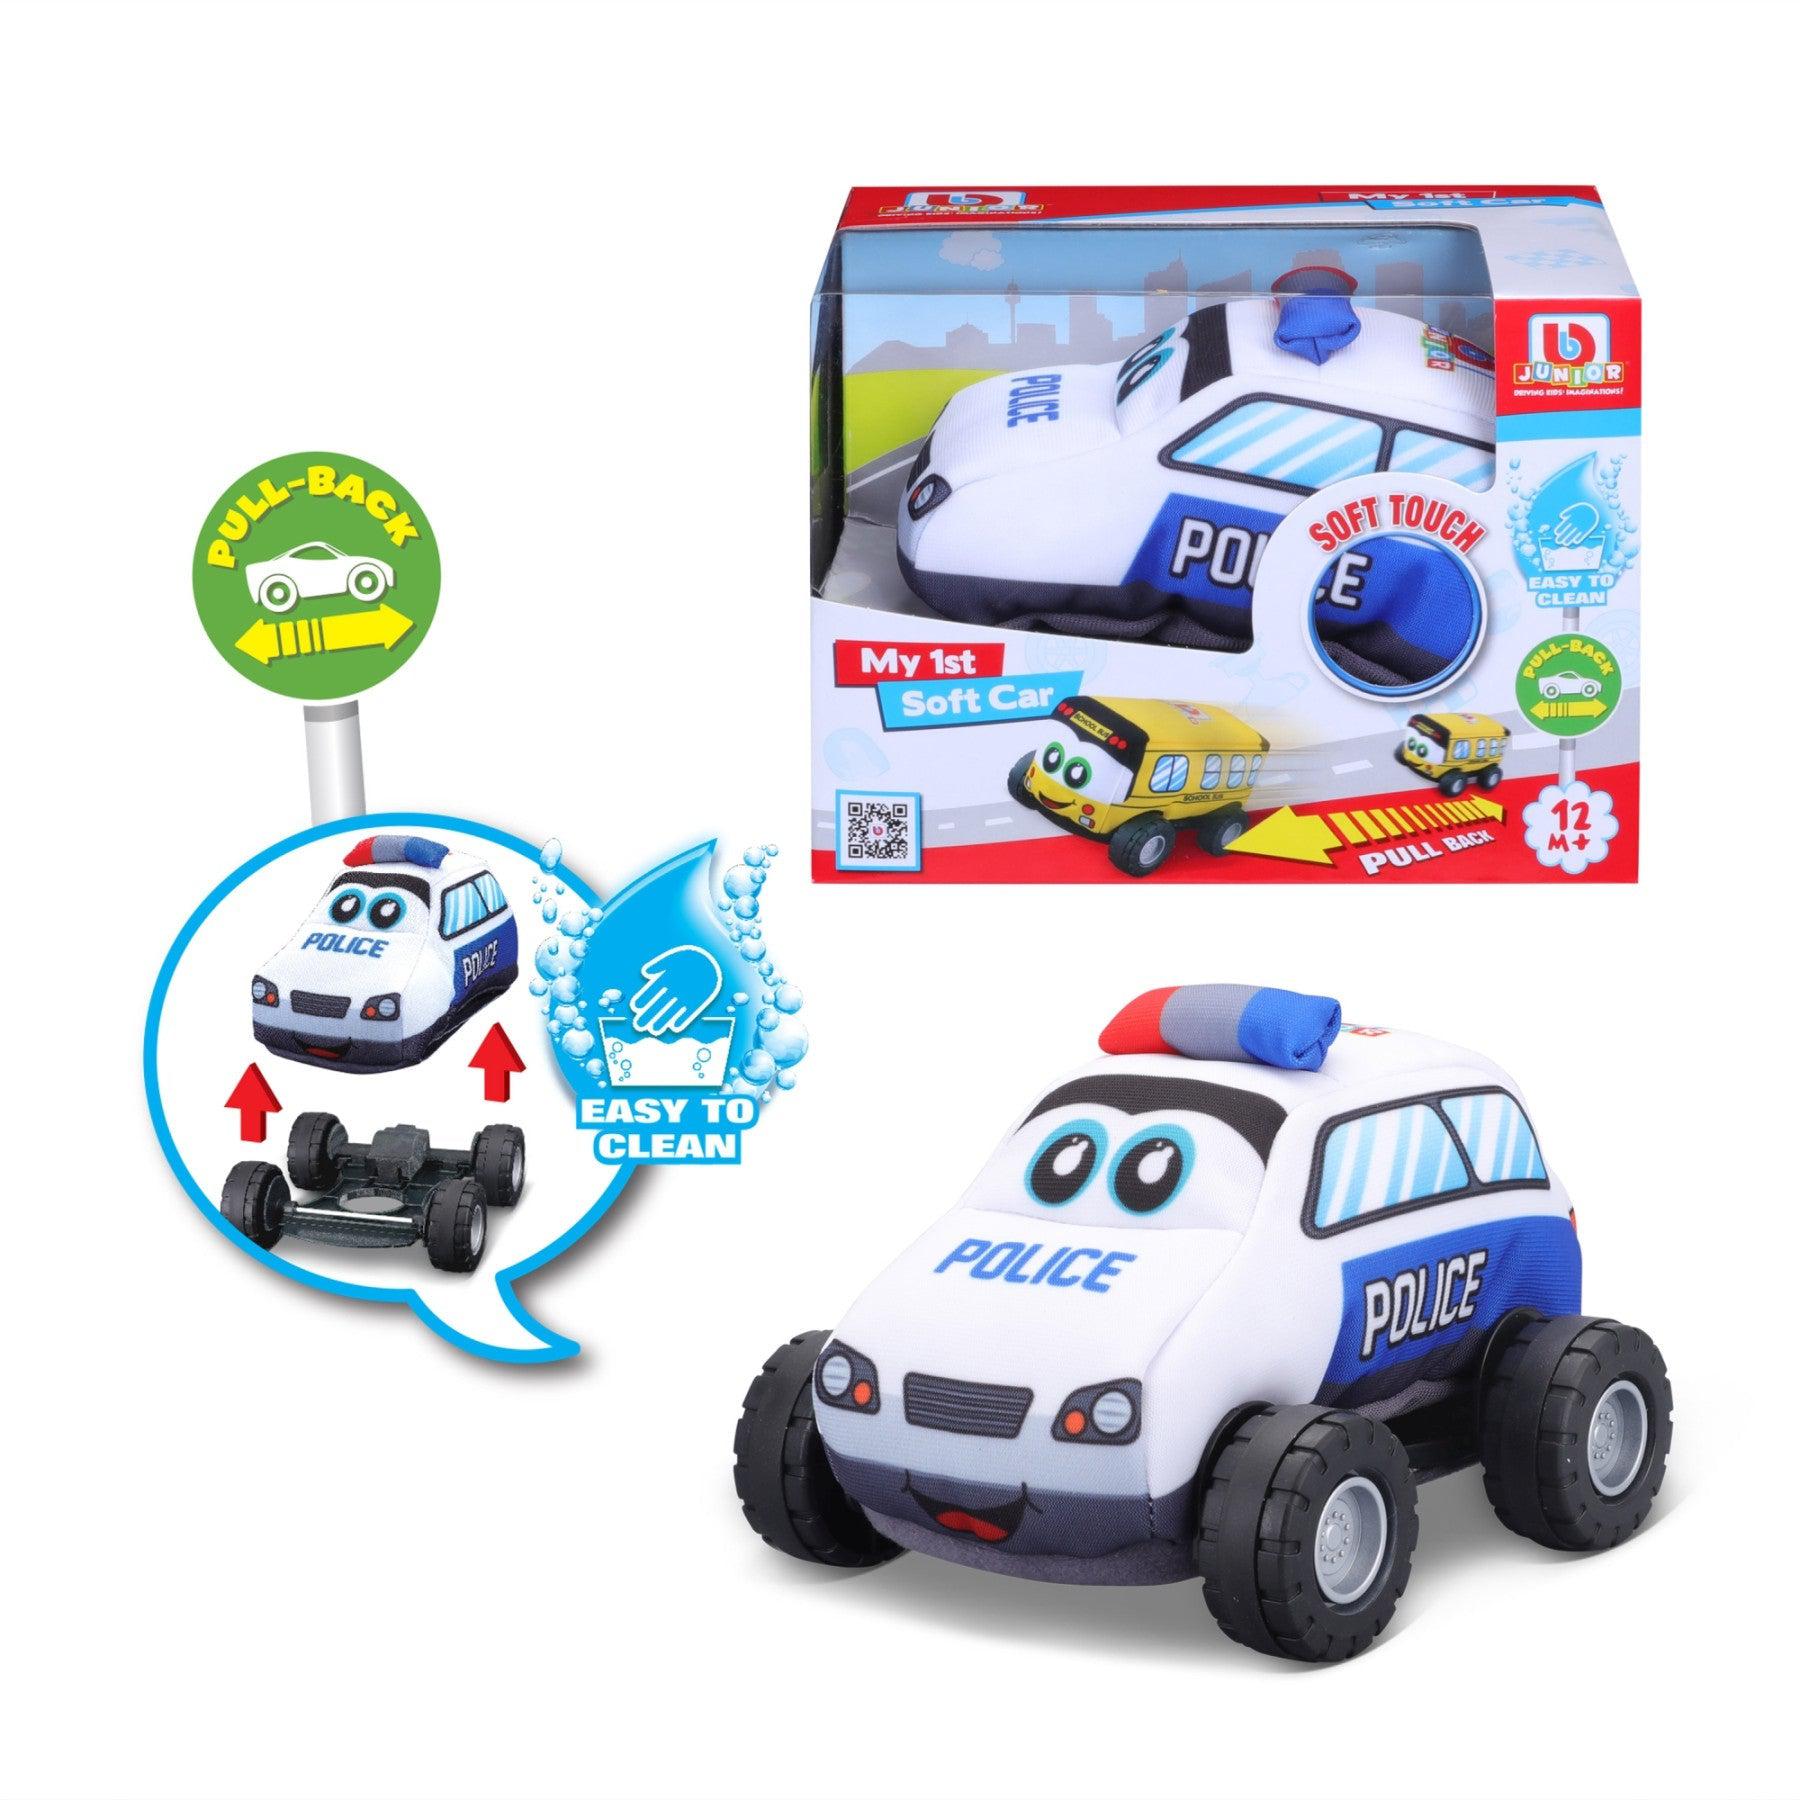 Maisto-My 1st Soft Car Police Car-16-89053-Legacy Toys